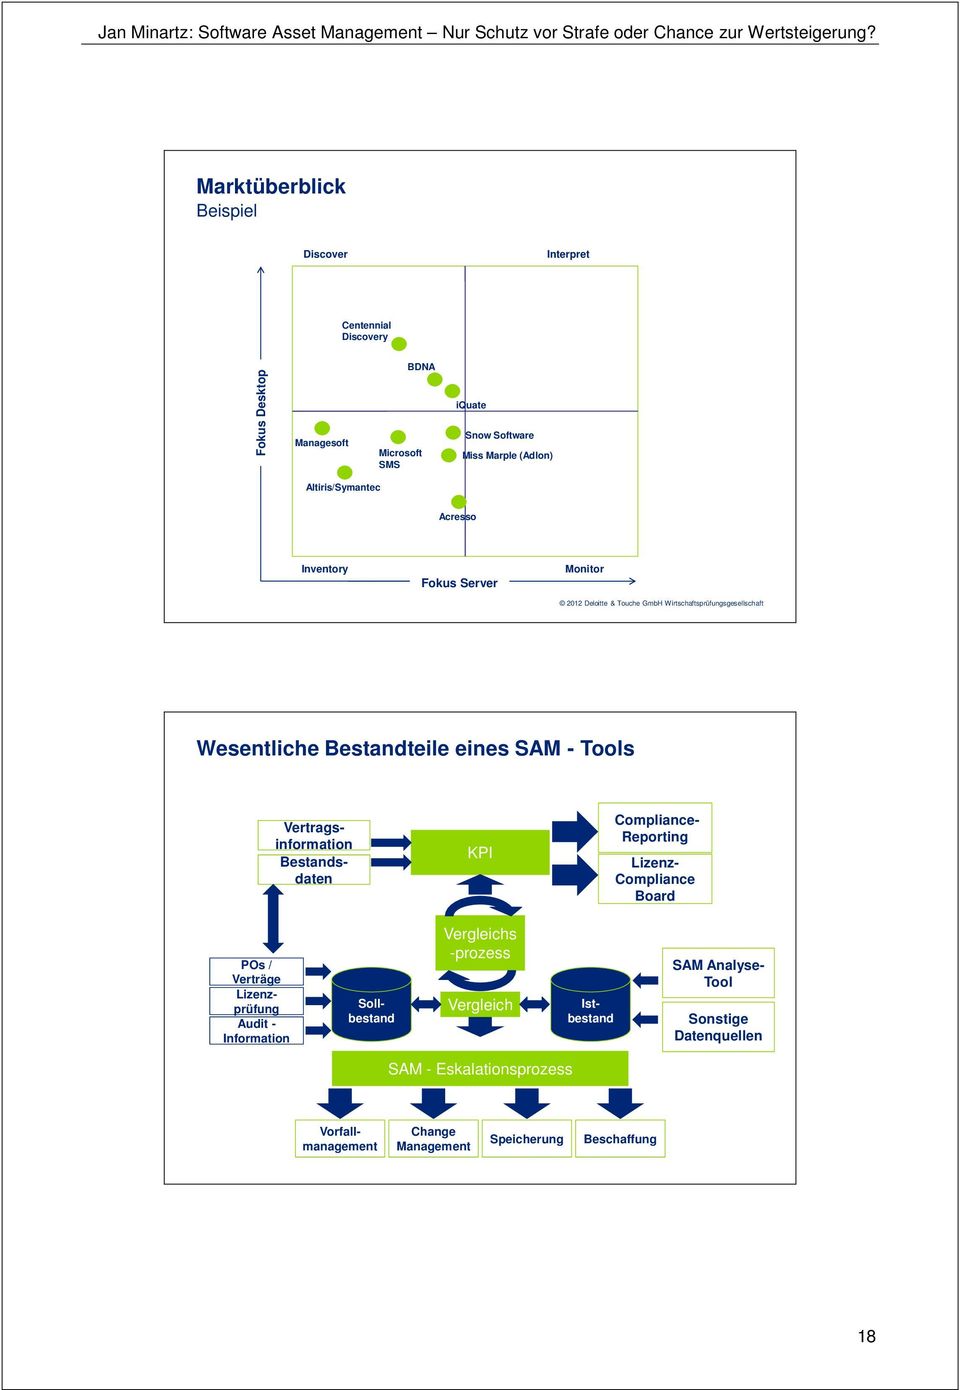 Inventory Fokus Server Monitor 2012 Deloitte & Touche GmbH Wirtschaftsprüfungsgesellschaft Wesentliche Bestandteile eines SAM - Tools Vertragsinformation Bestandsdaten KPI